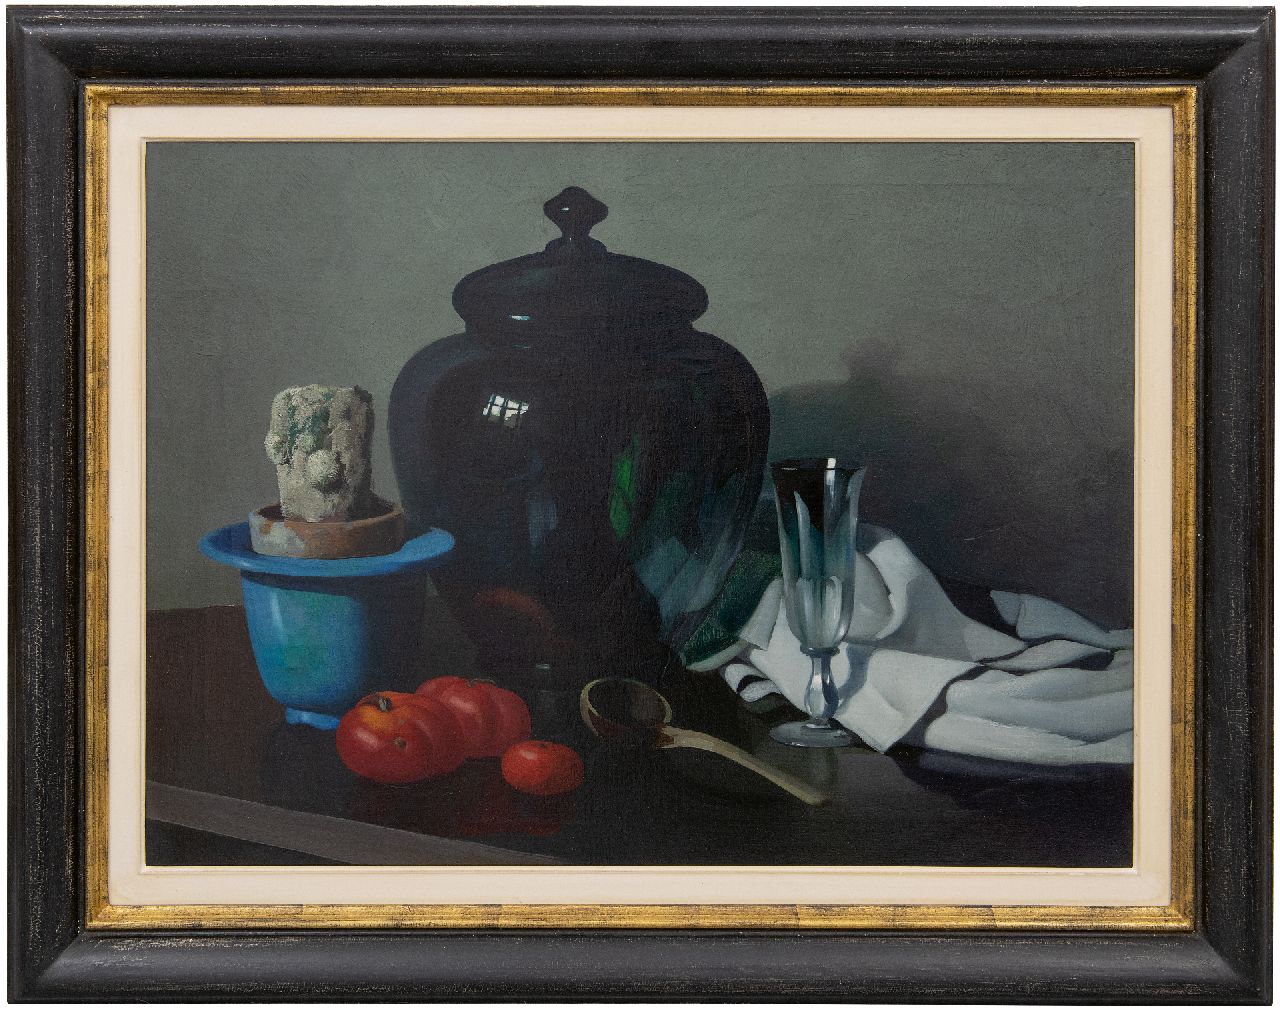 Hoff A.J. van 't | Adrianus Johannes 'Adriaan' van 't Hoff | Schilderijen te koop aangeboden | Stilleven met cactus in een pot, glazen bowl en tomaten, olieverf op doek 56,7 x 75,8 cm